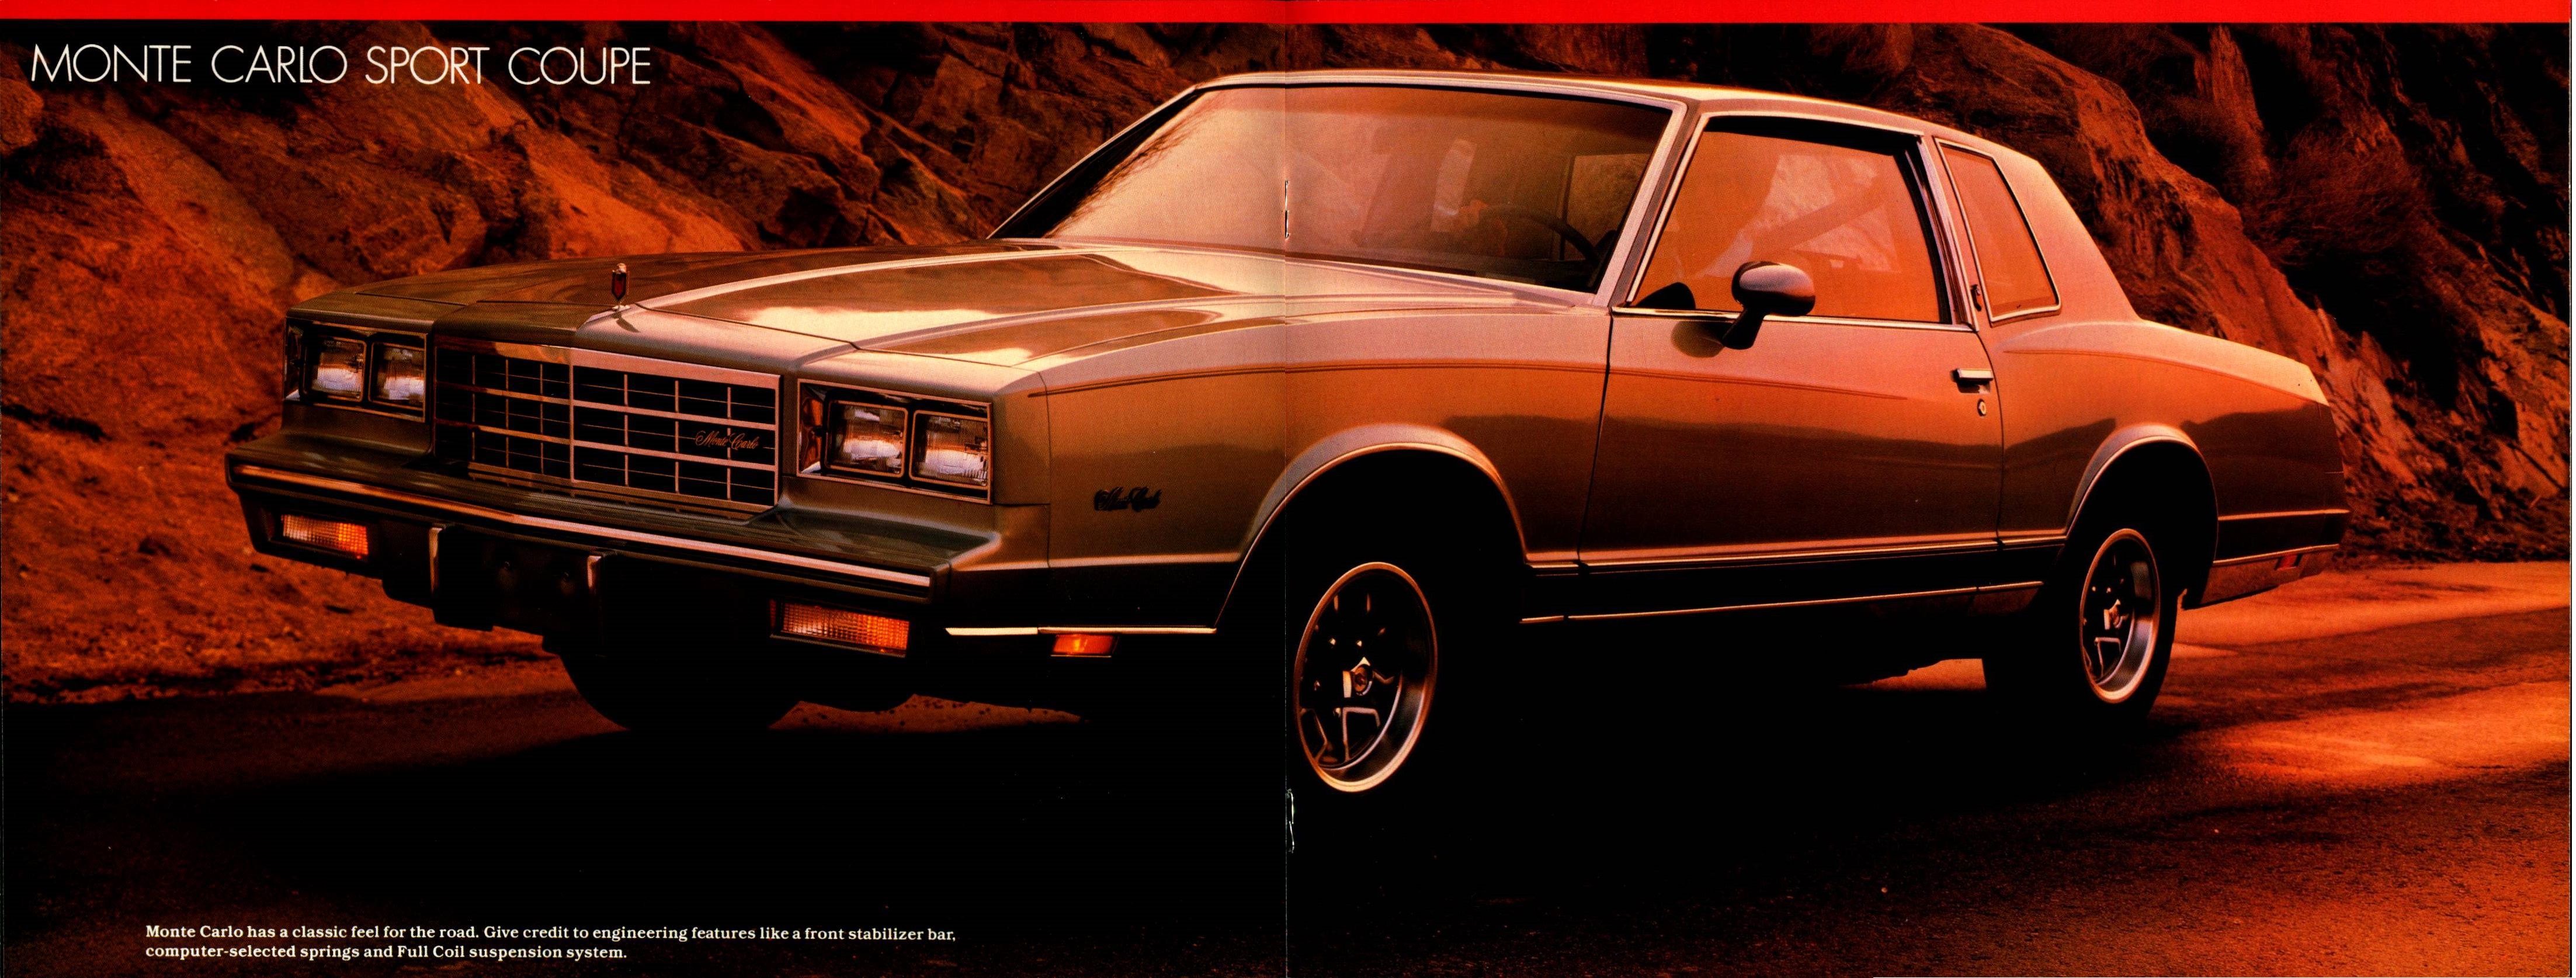 1983 Chevrolet Monte Carlo (Cdn)  04-05